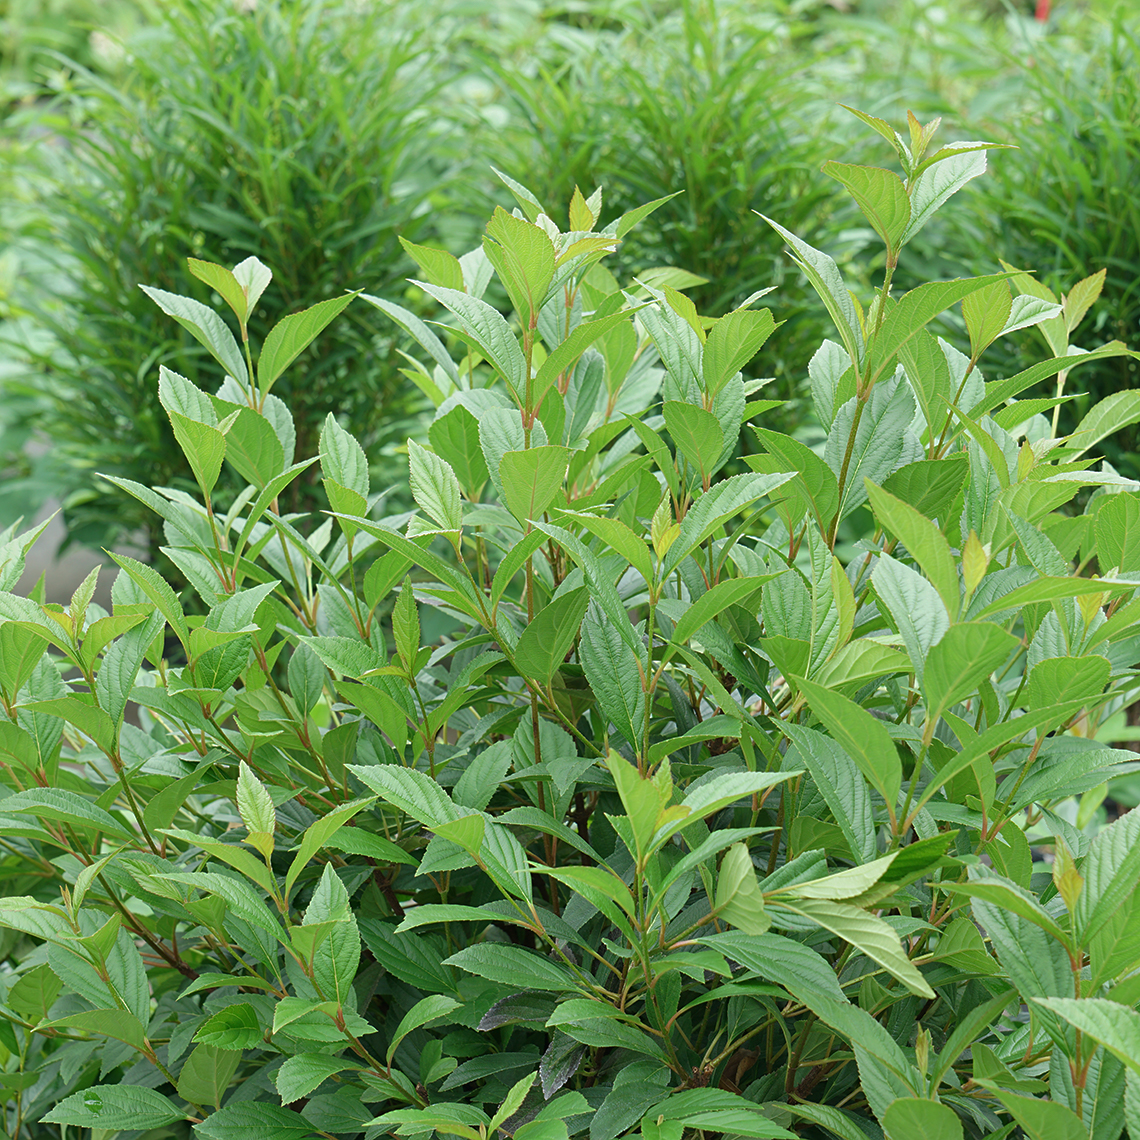 Sweet Talker viburnum growing in a landscape